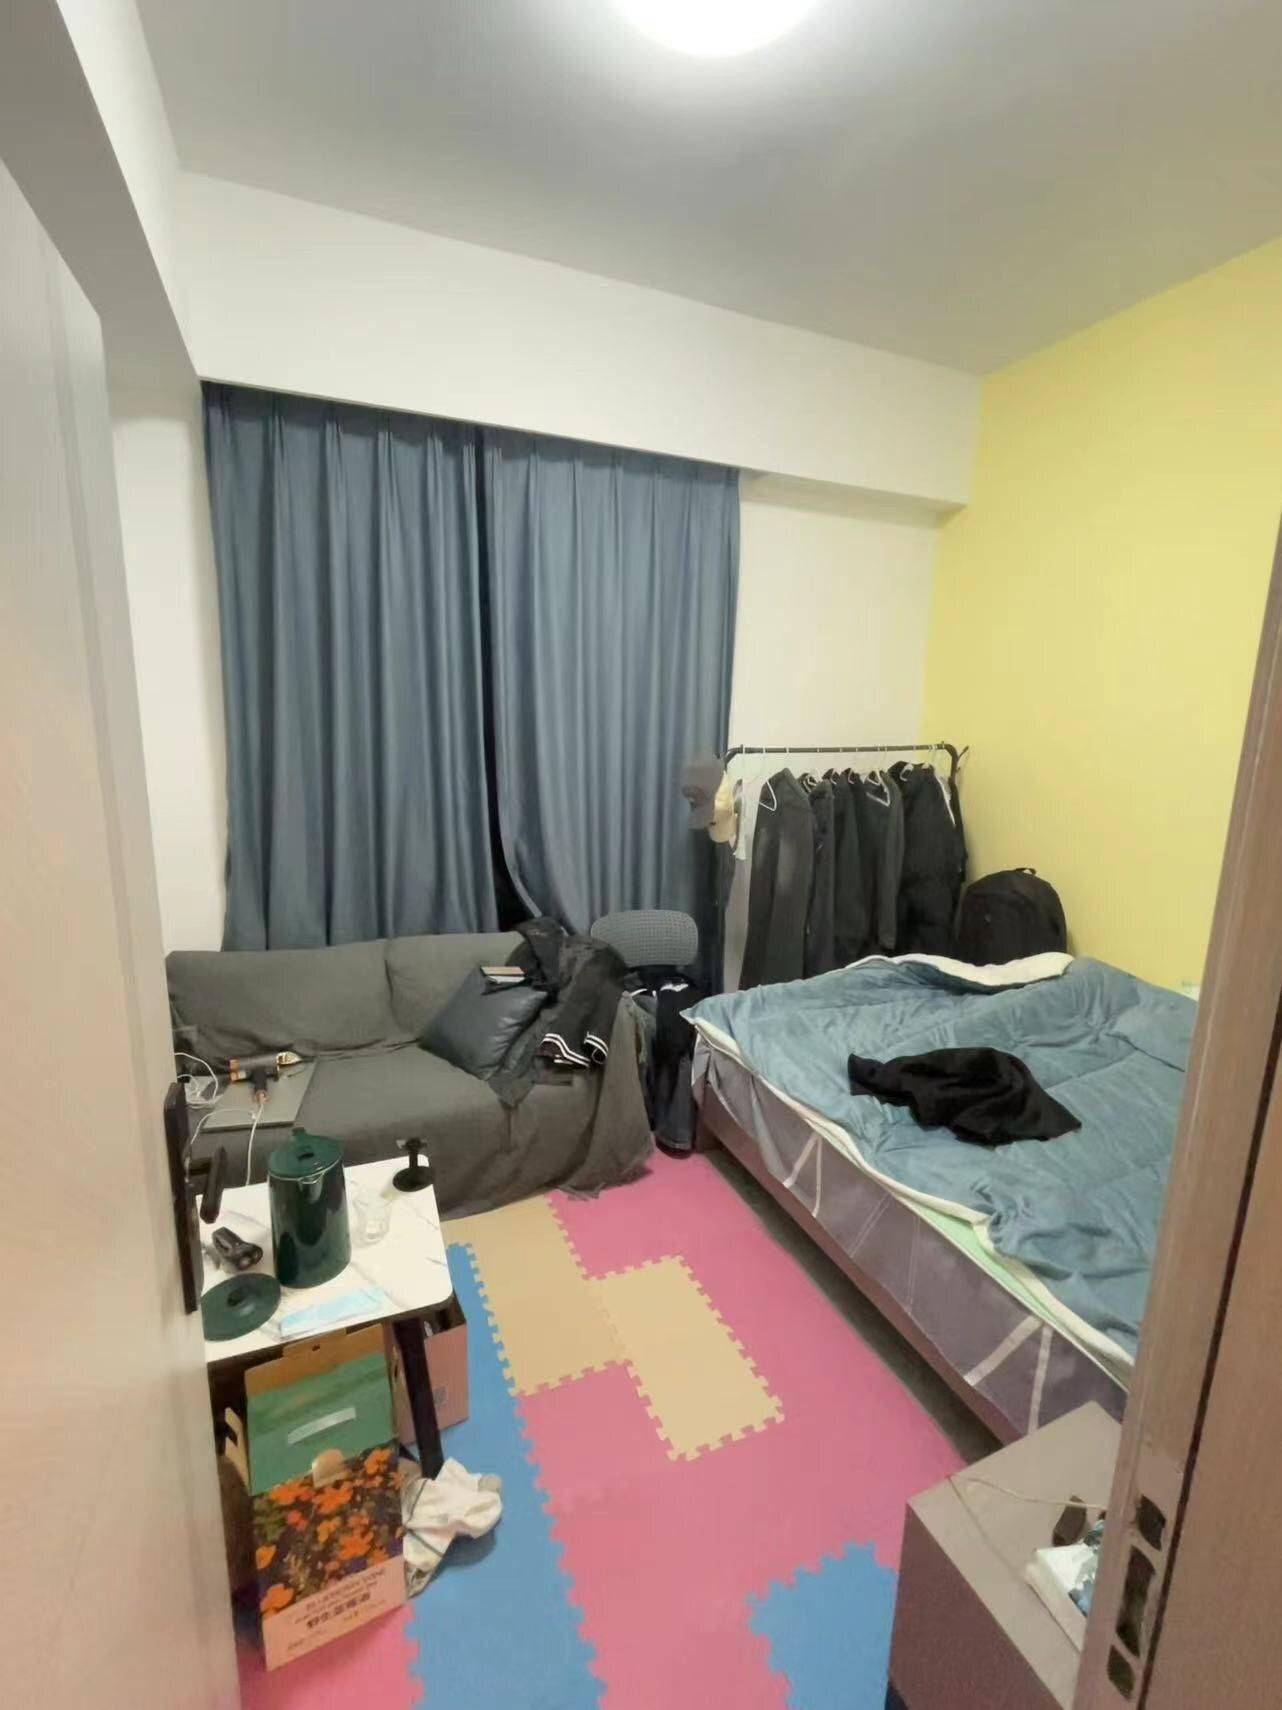 Shenzhen-BaoAn-Cozy Home,Clean&Comfy,No Gender Limit